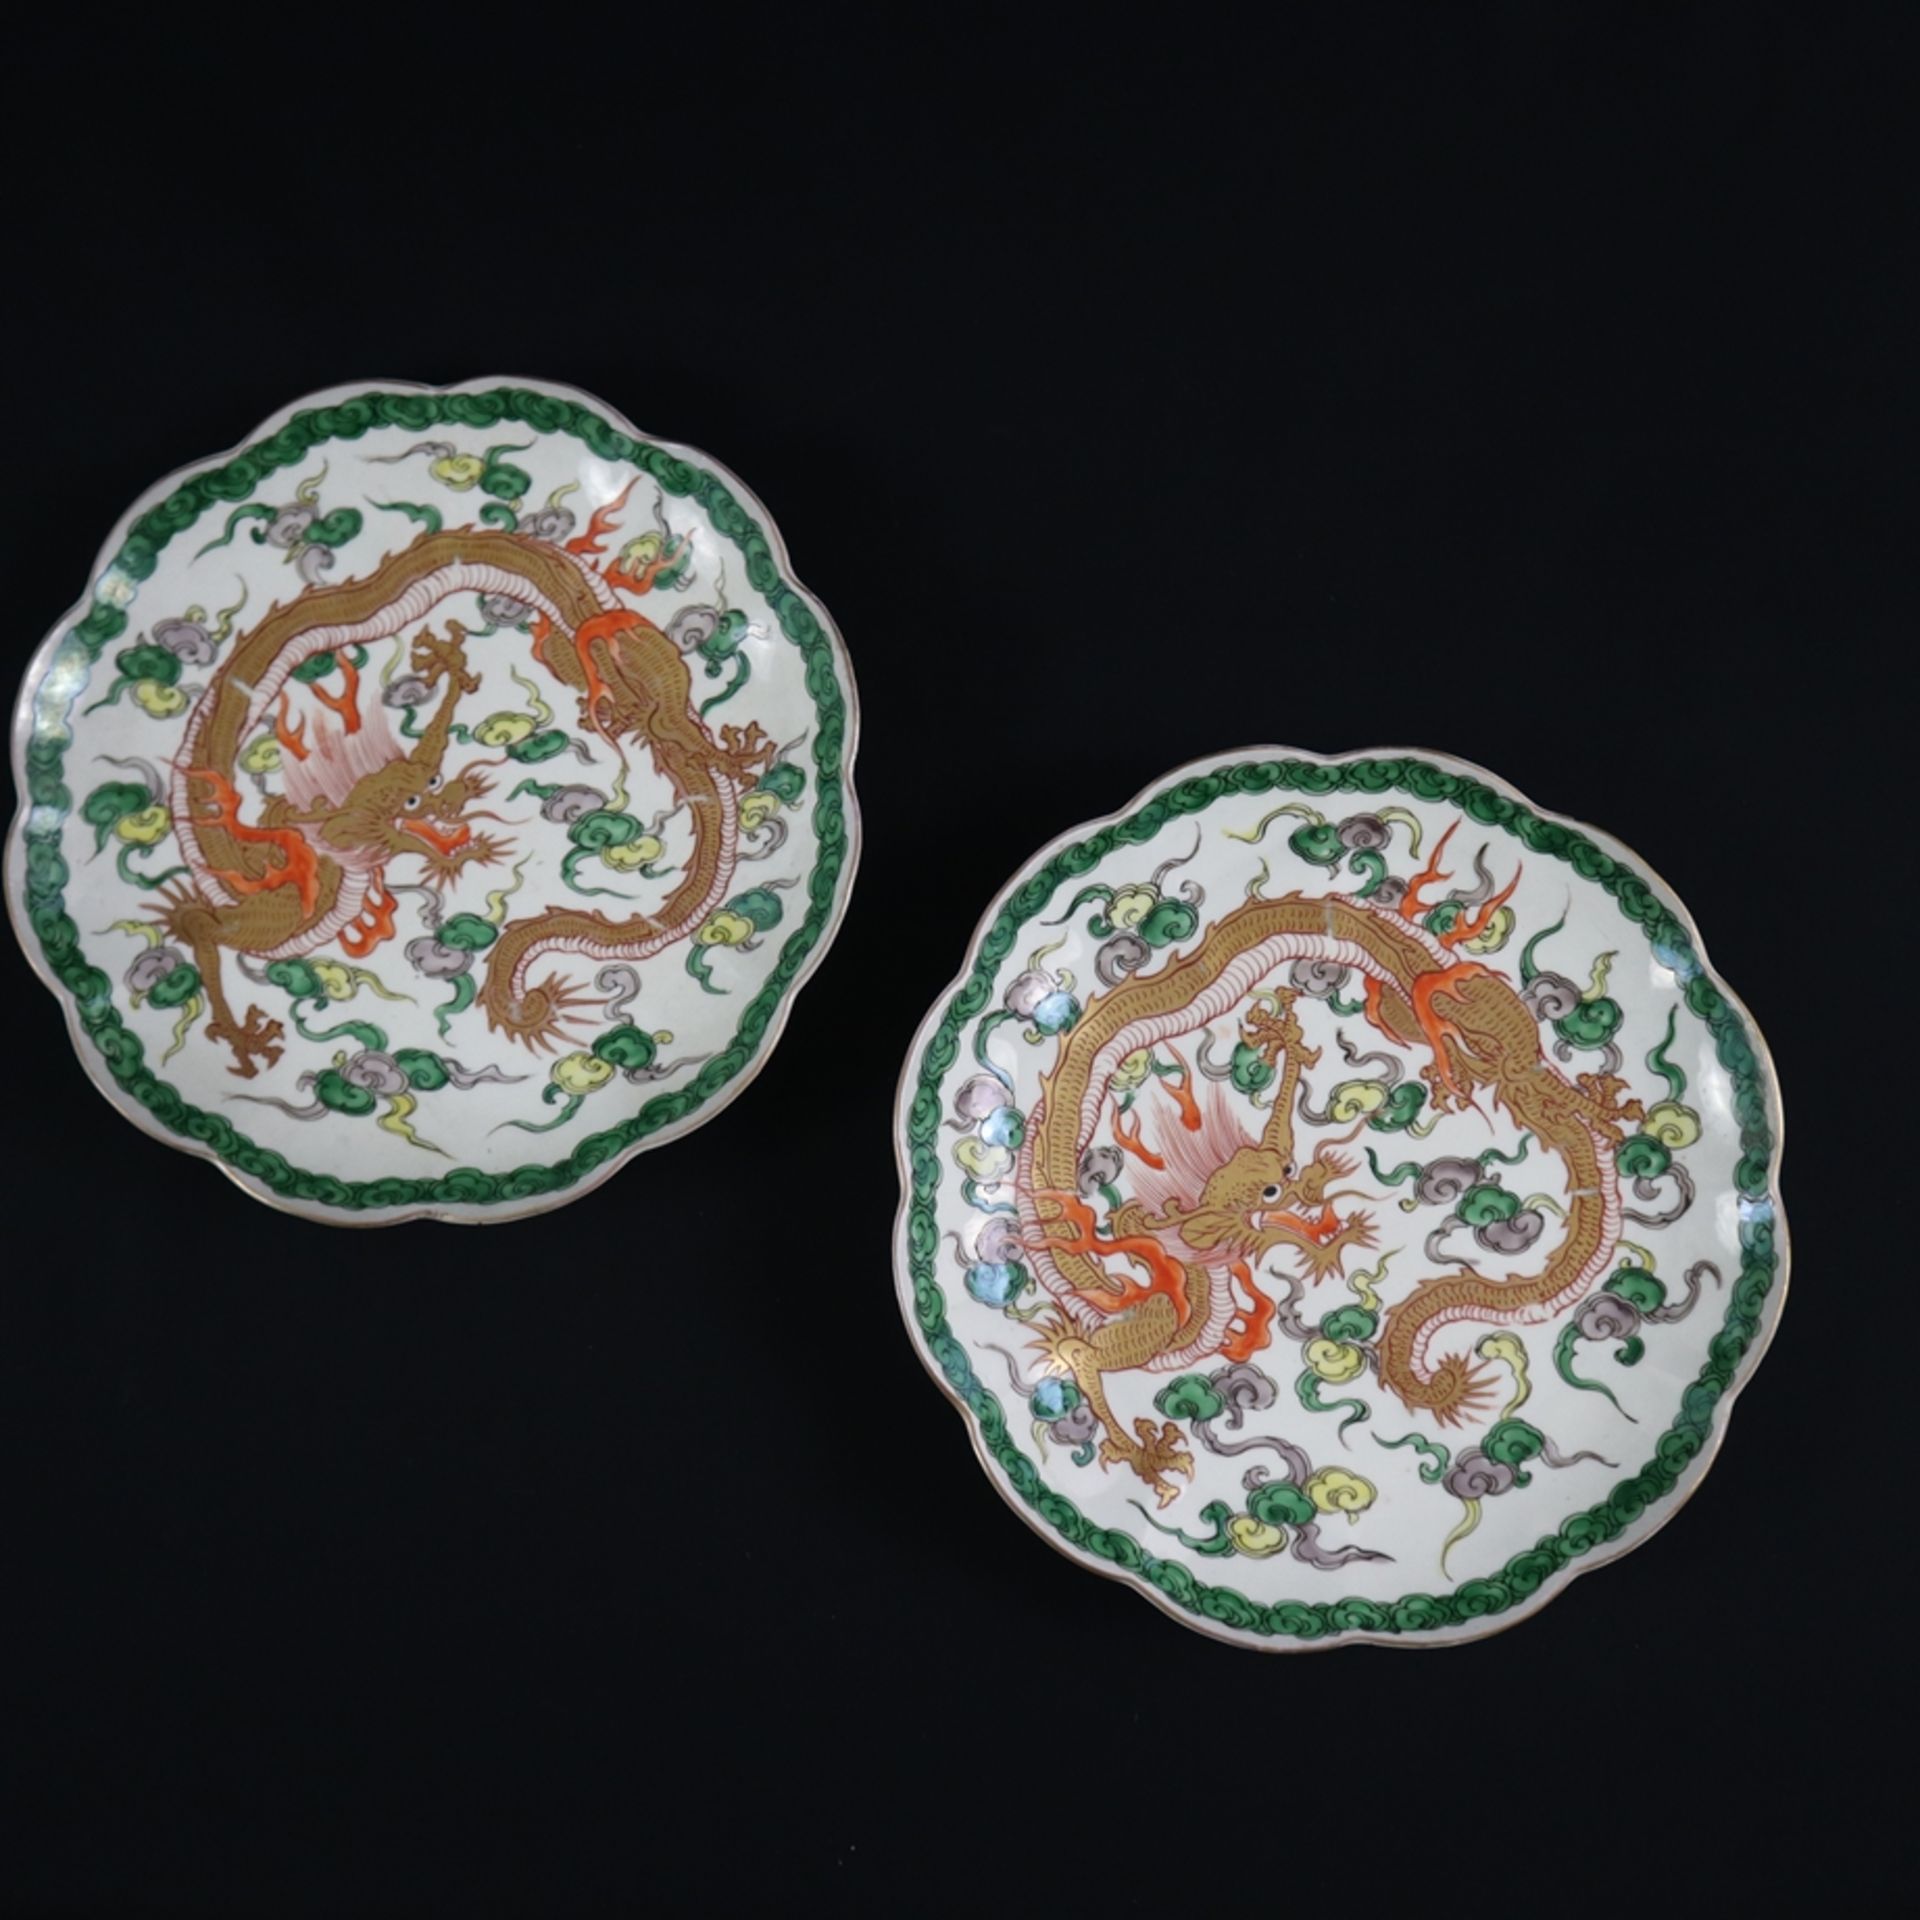 Zwei Drachenteller - China, frühes 20.Jh., runde Form mit blütenförmiger Fahne, im Spiegel jeweils 